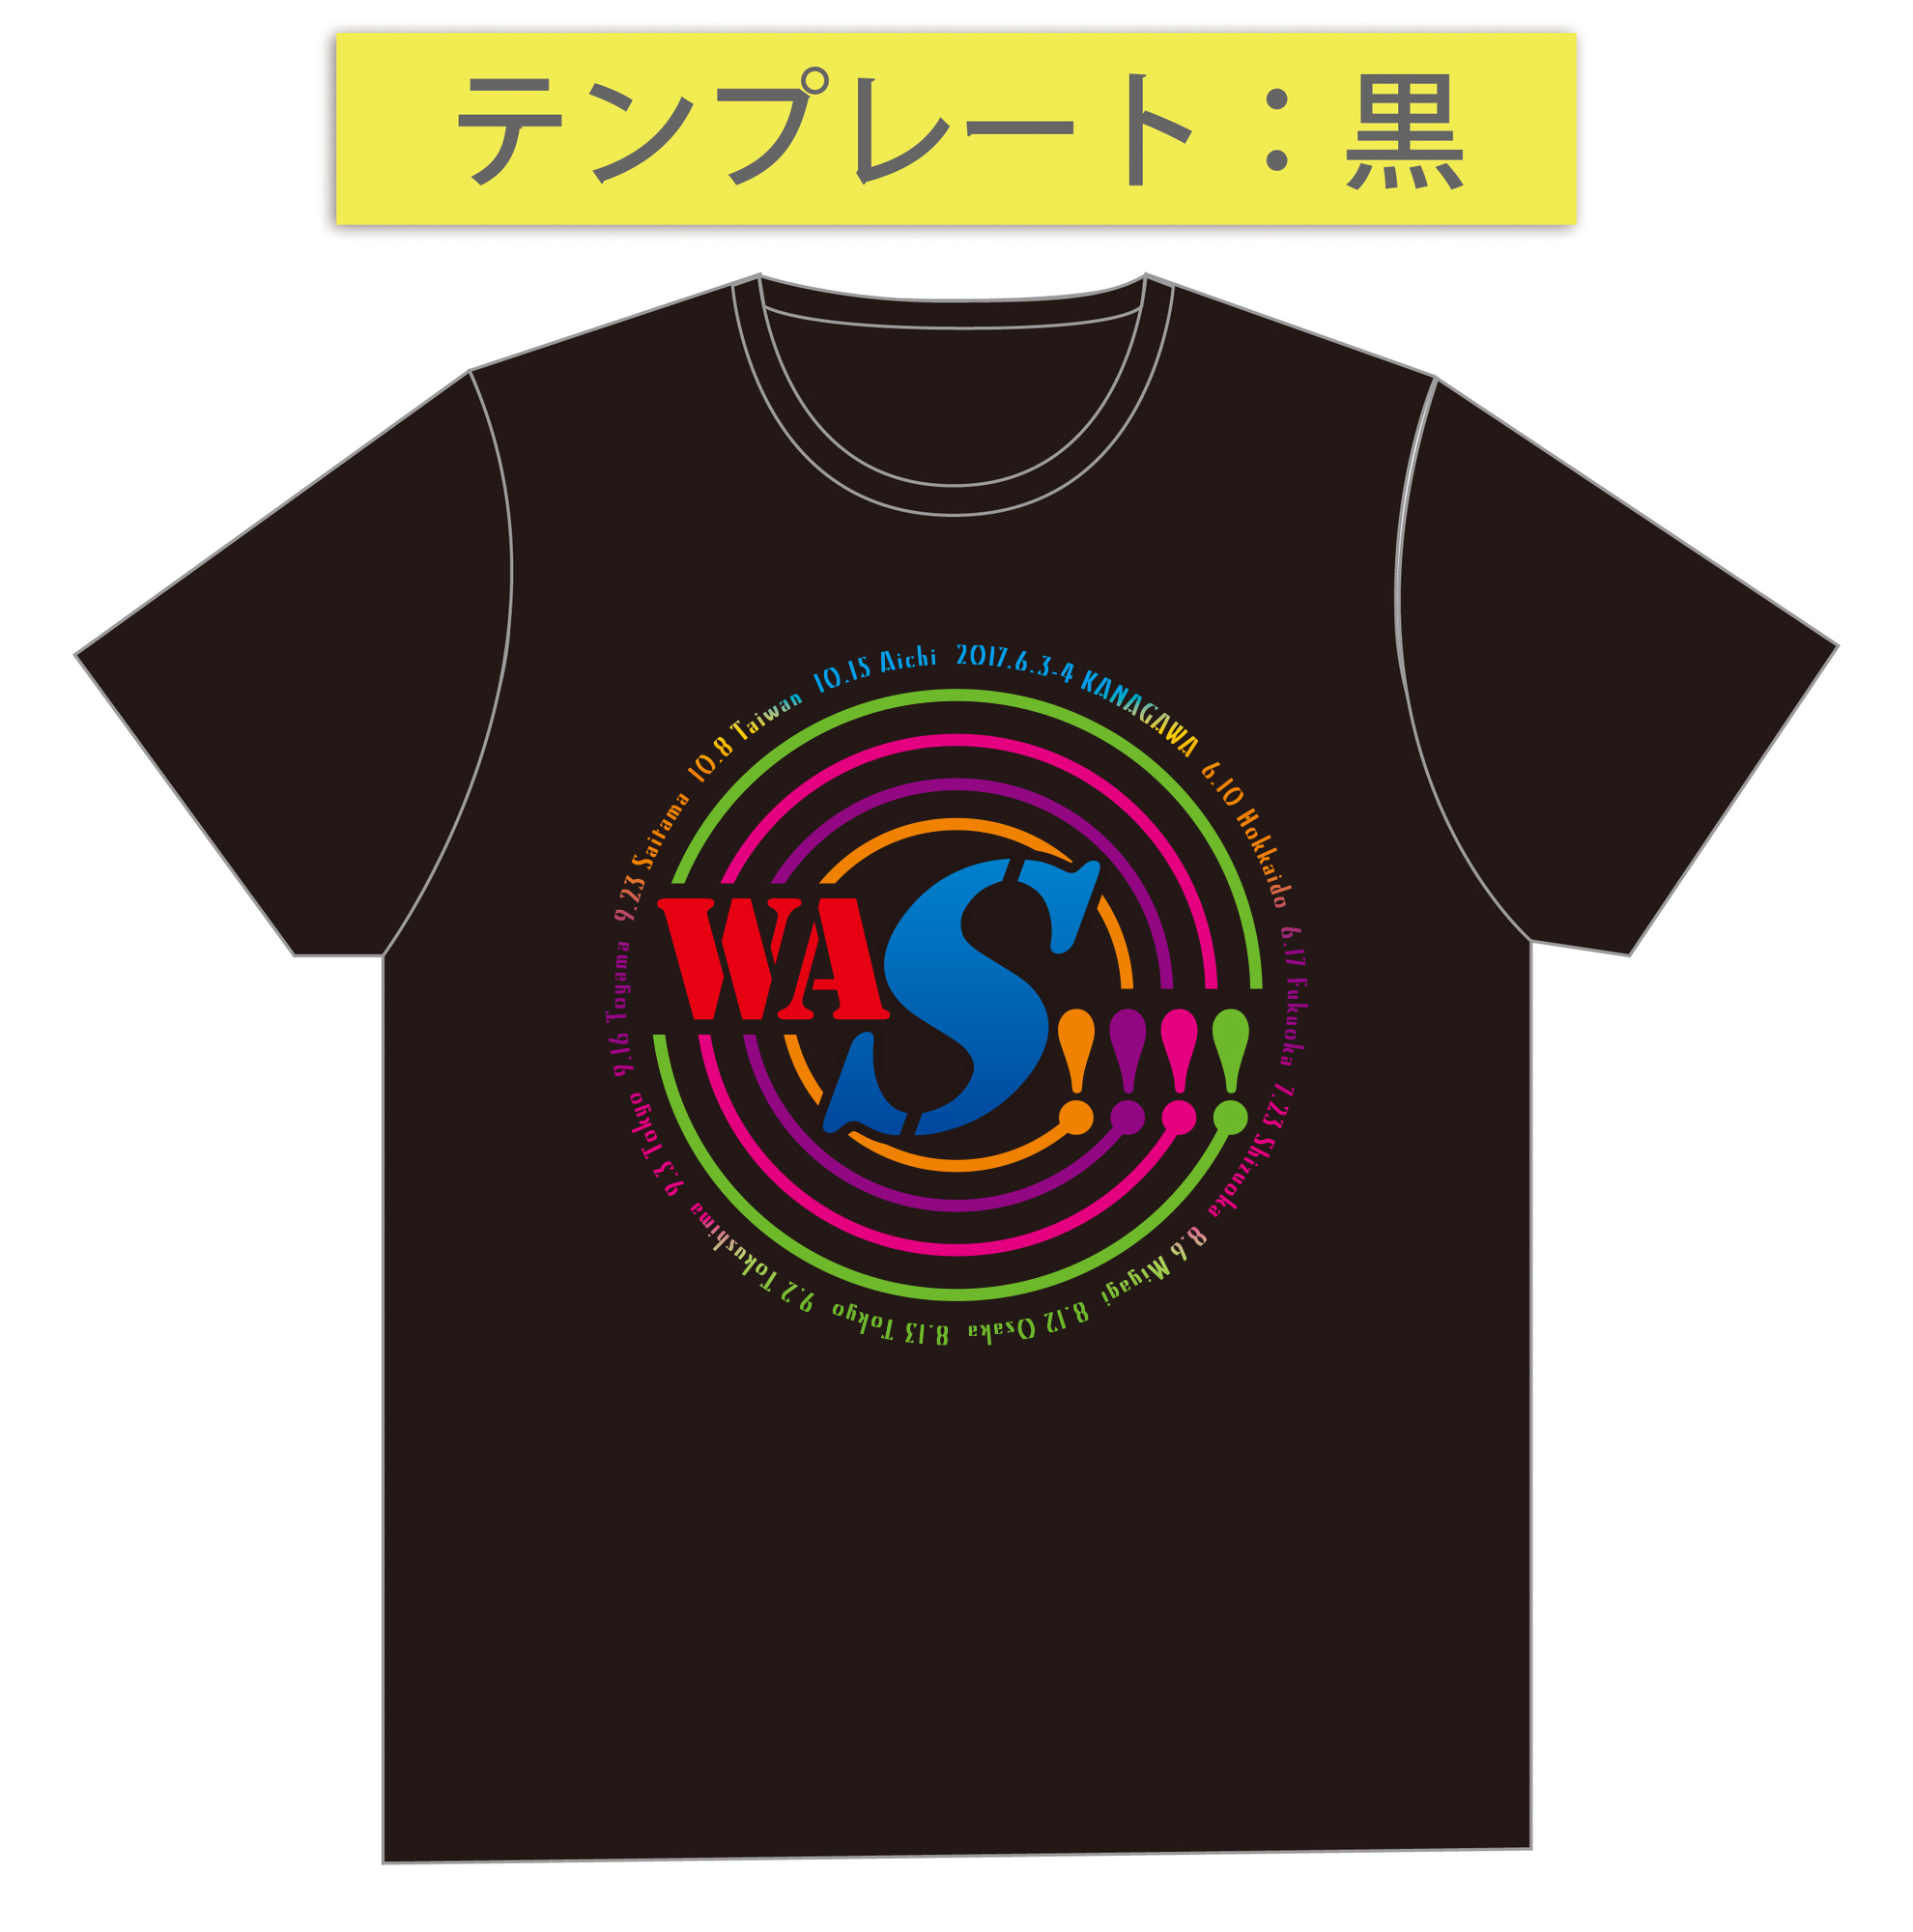 Tshirt_design02